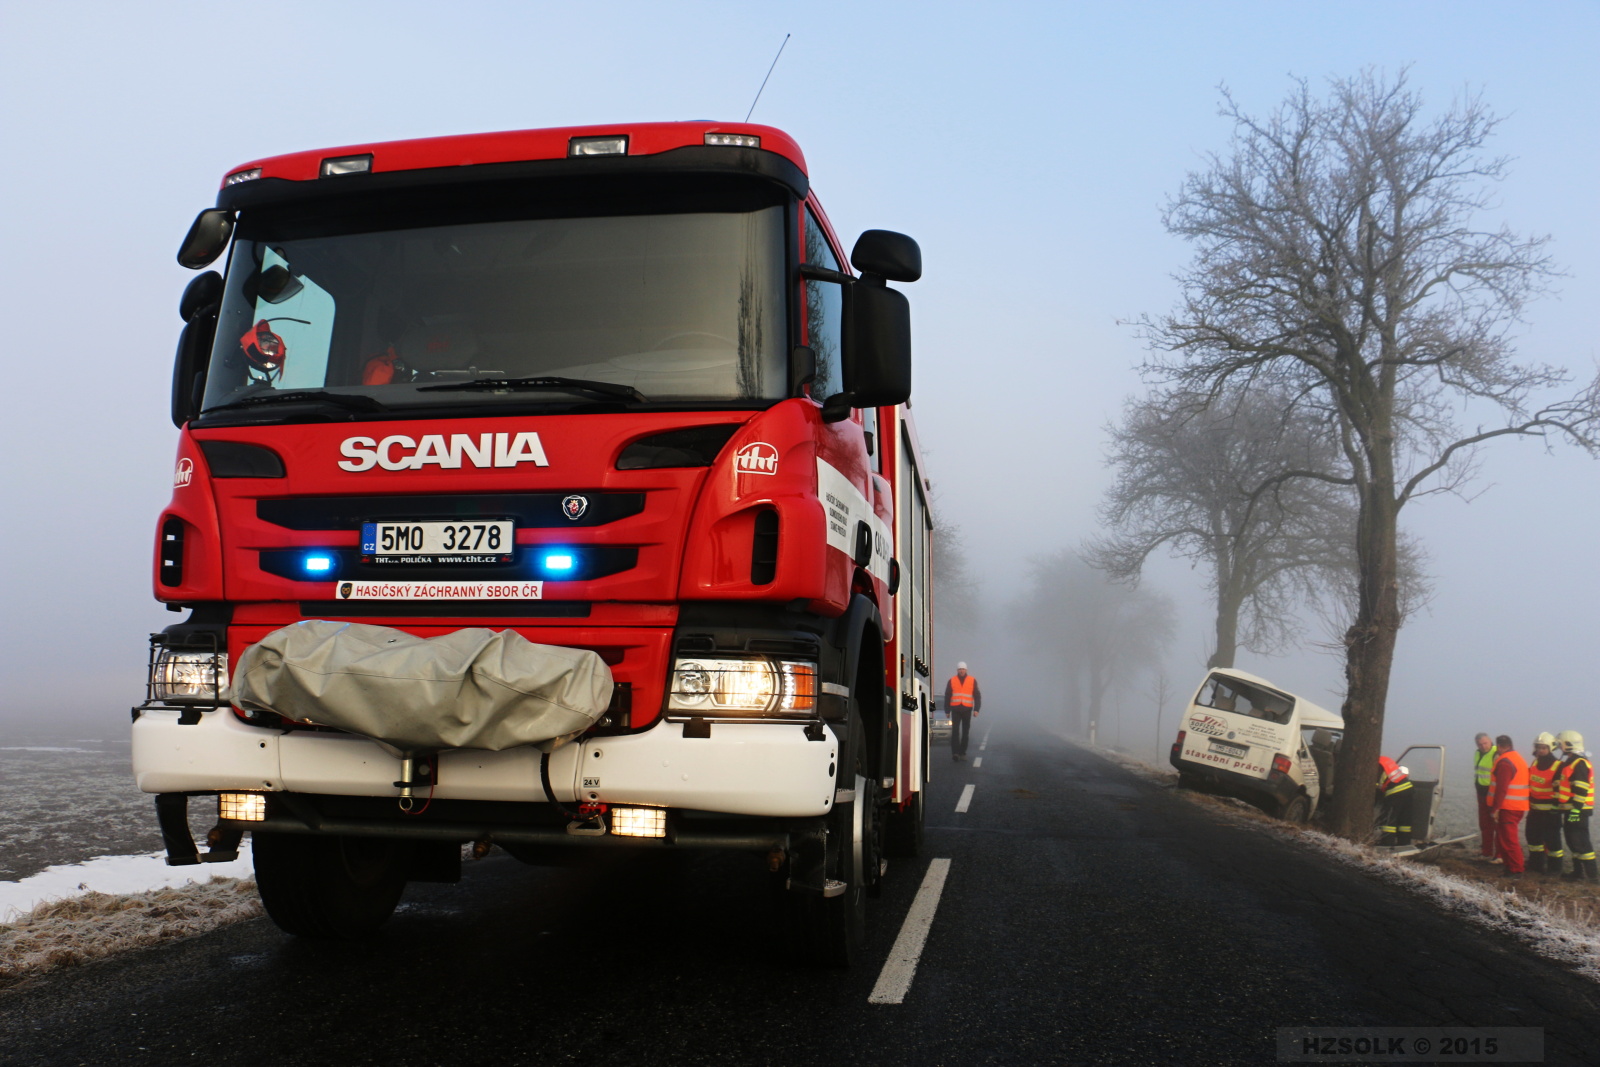 8 13-2-2015 Tragická dopravní nehoda Výšovice_více vozidel (16).JPG